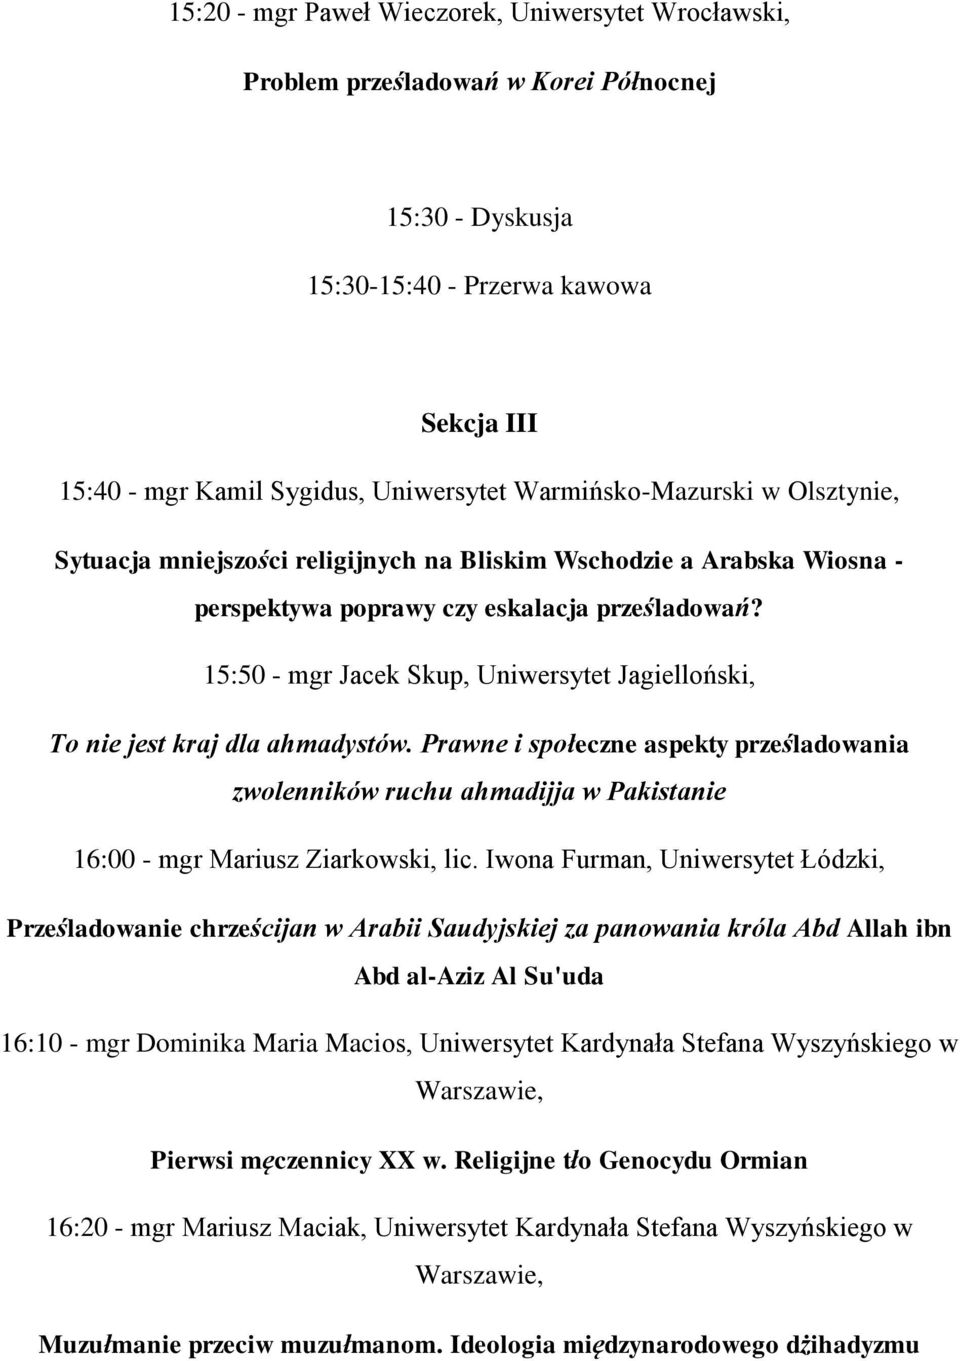 15:50 - mgr Jacek Skup, Uniwersytet Jagielloński, To nie jest kraj dla ahmadystów.